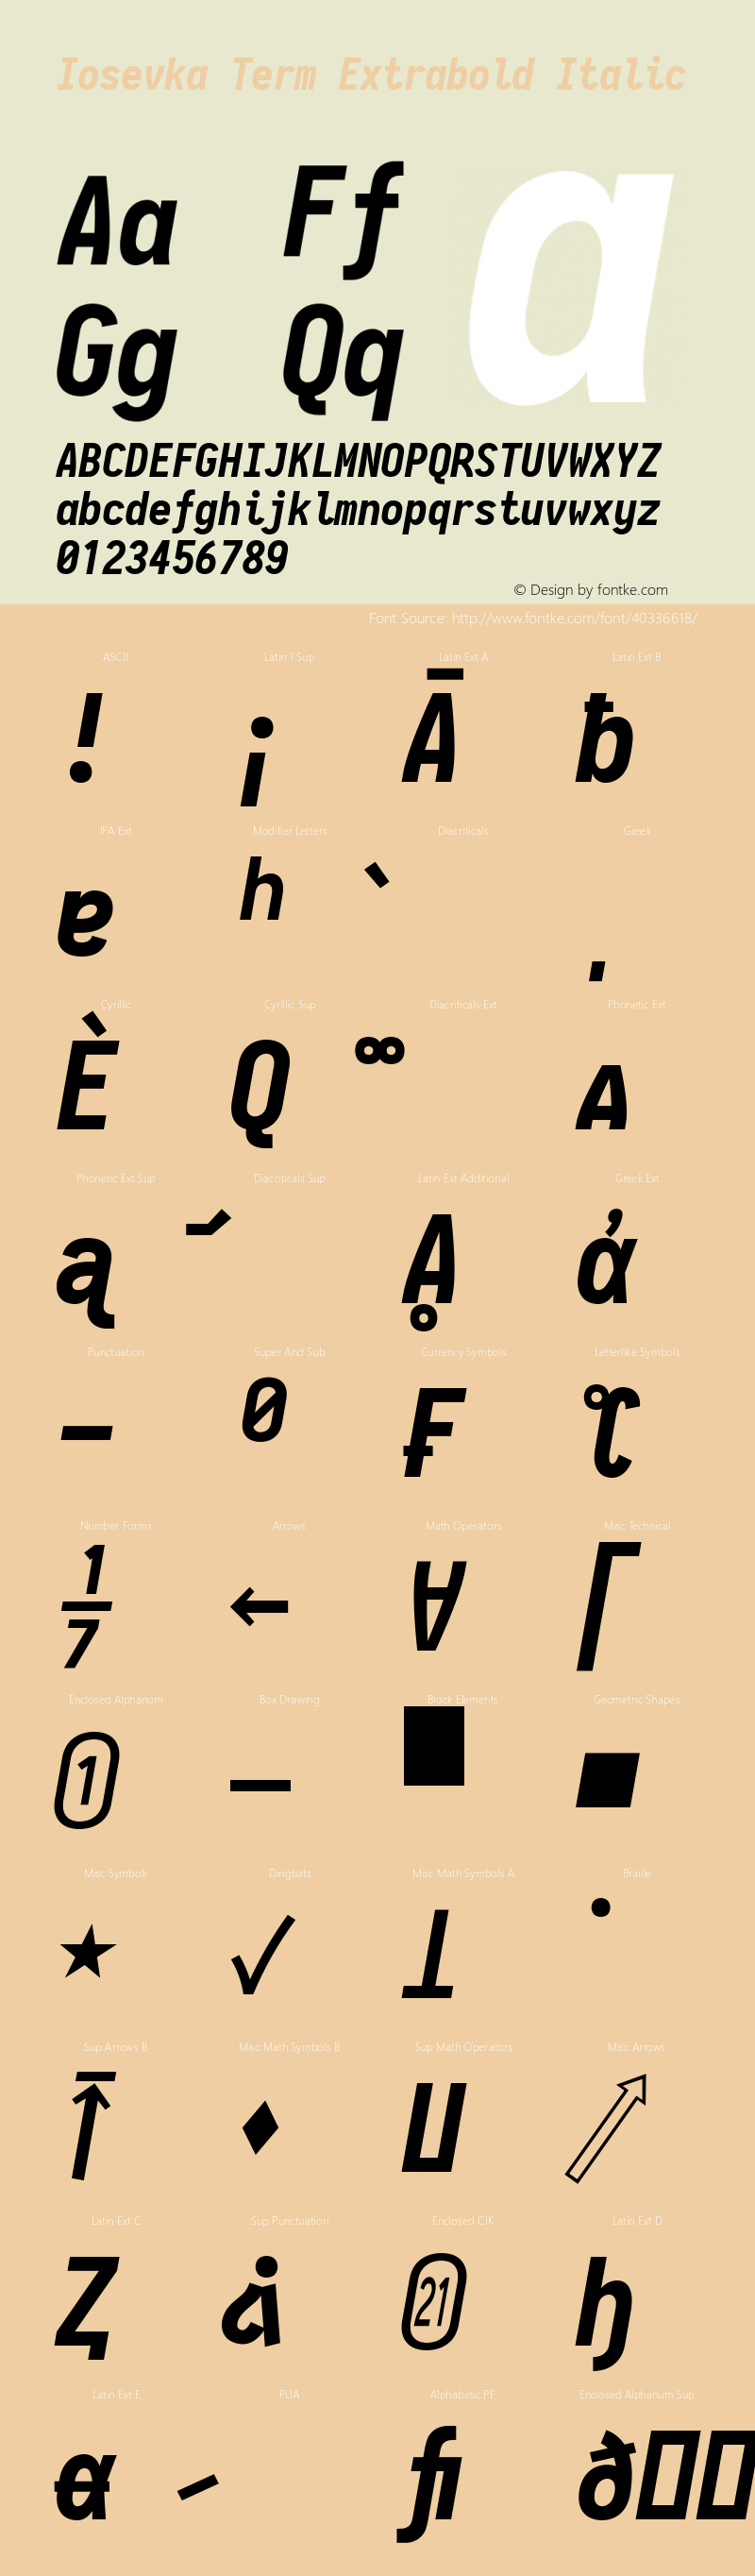 Iosevka Term Extrabold Italic 2.3.0; ttfautohint (v1.8.3)图片样张